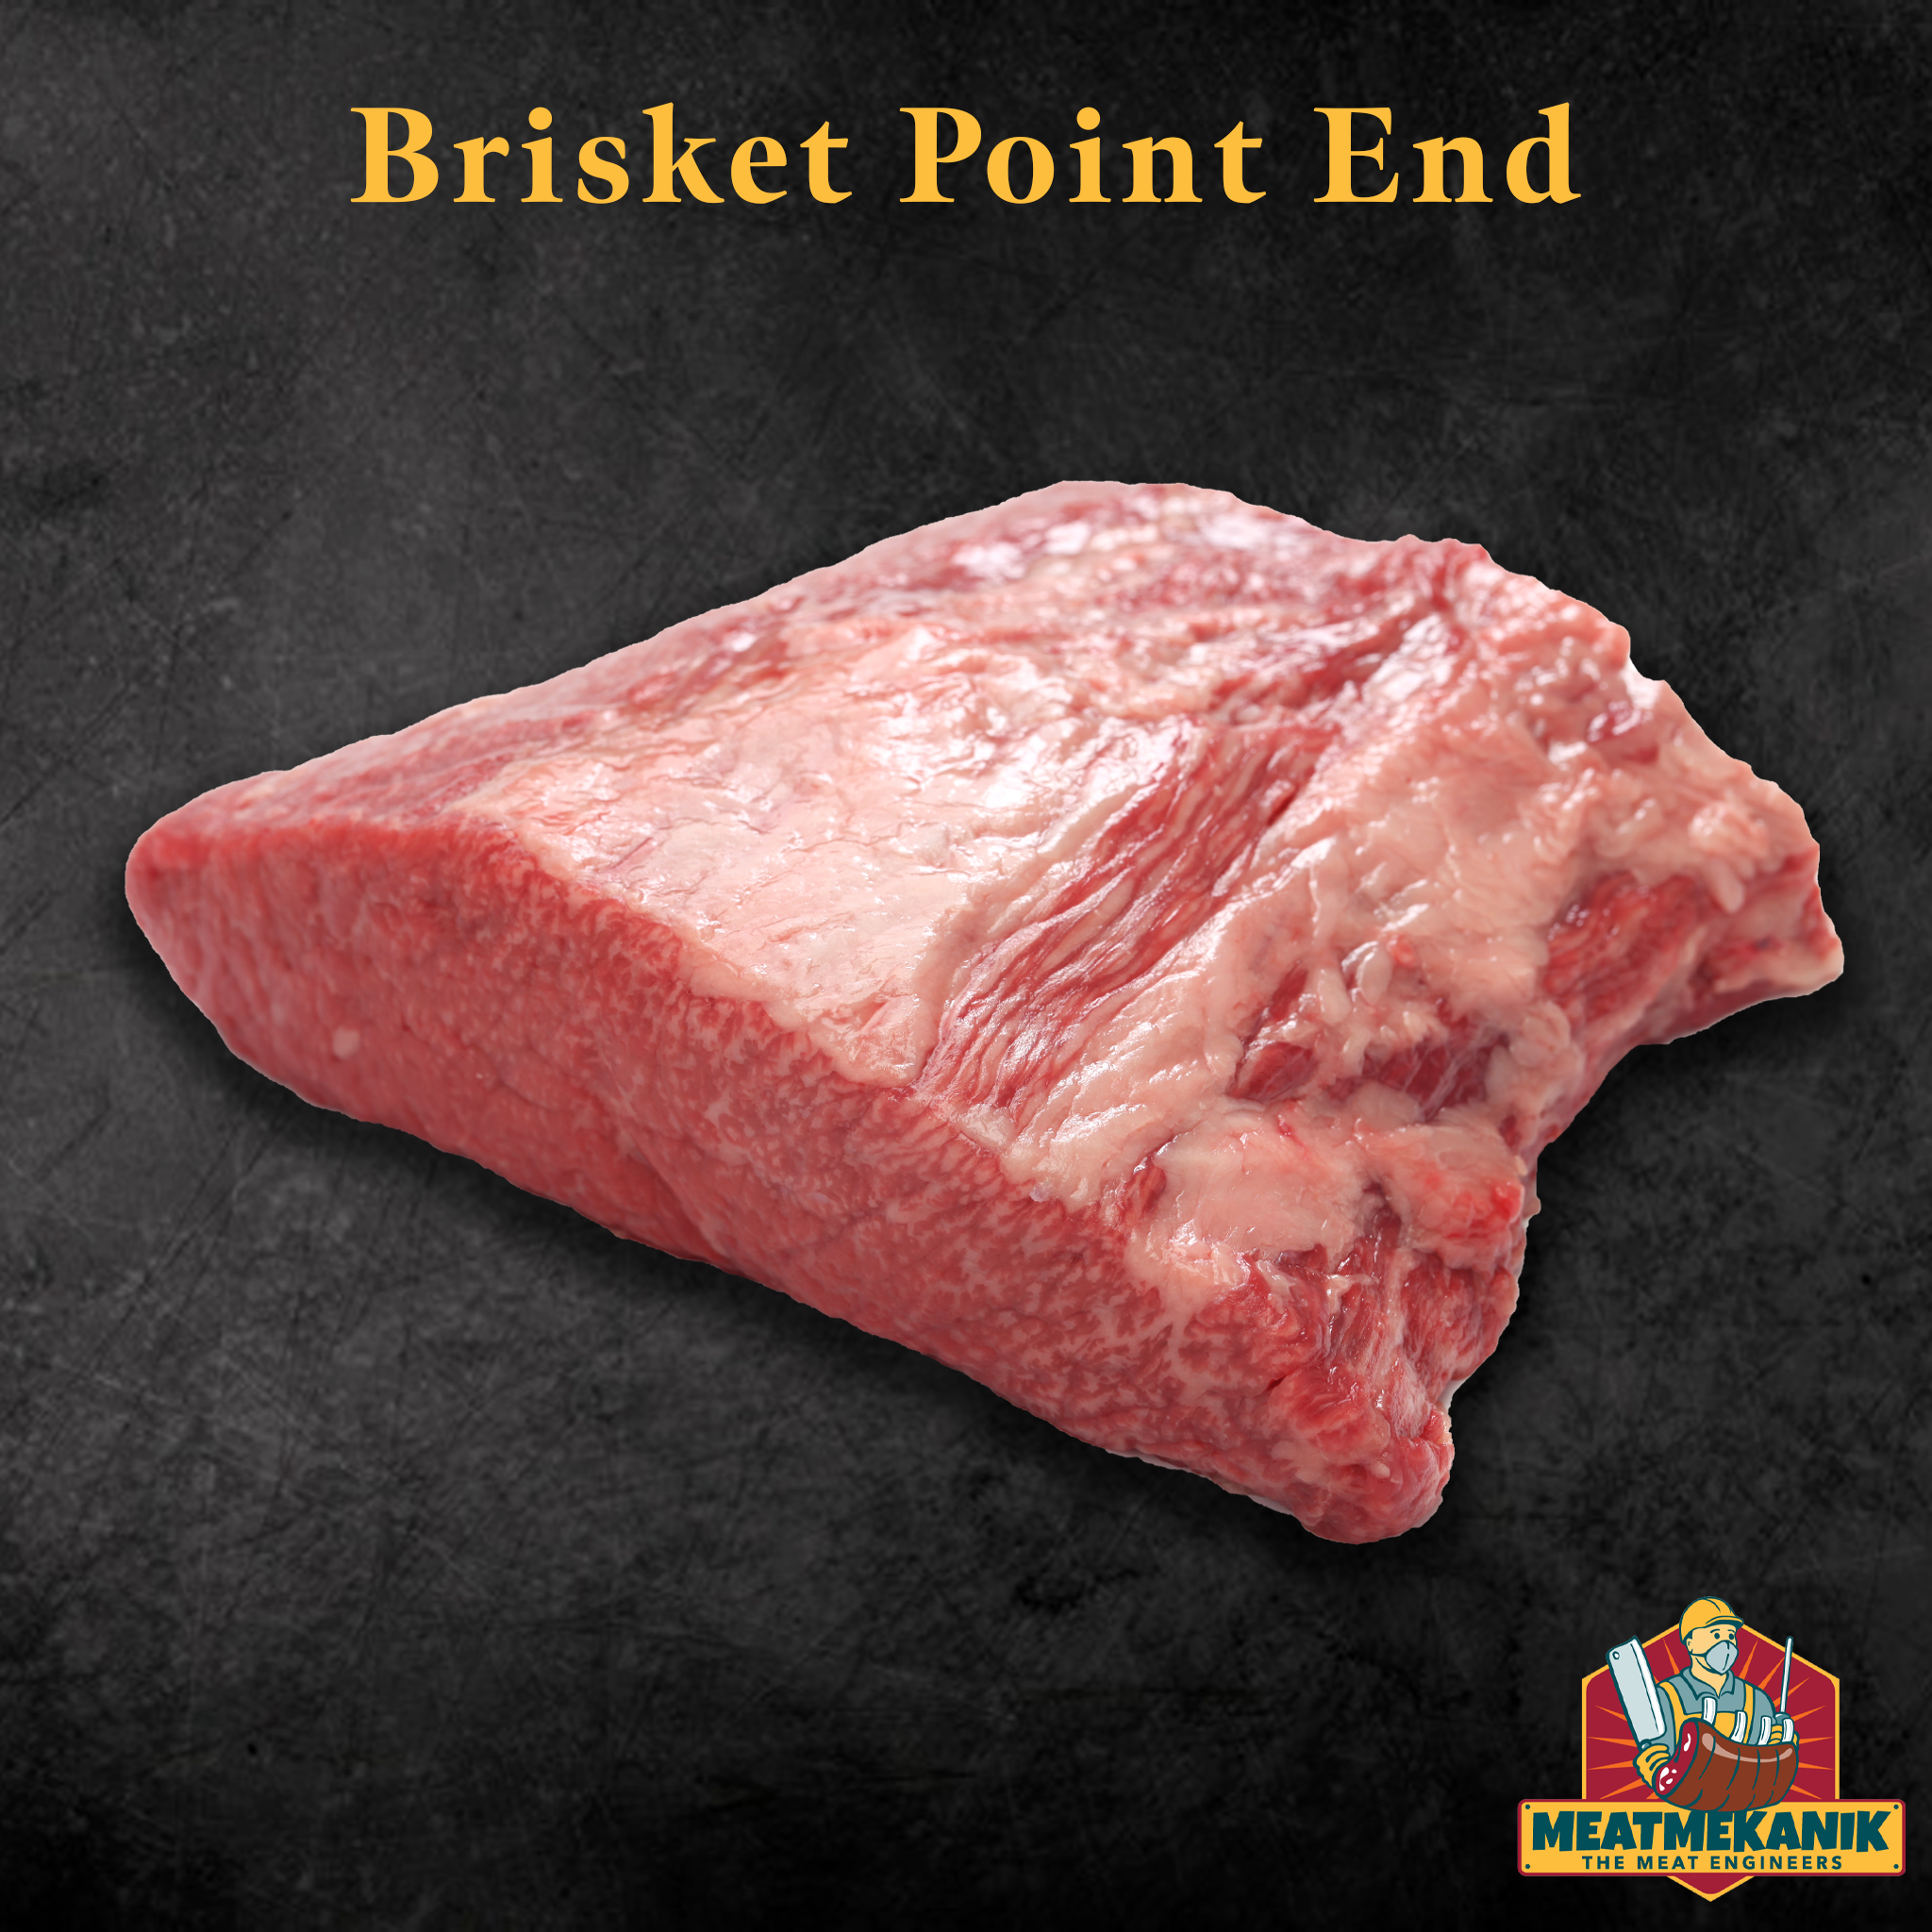 Brisket Point End - Meat Mekanik